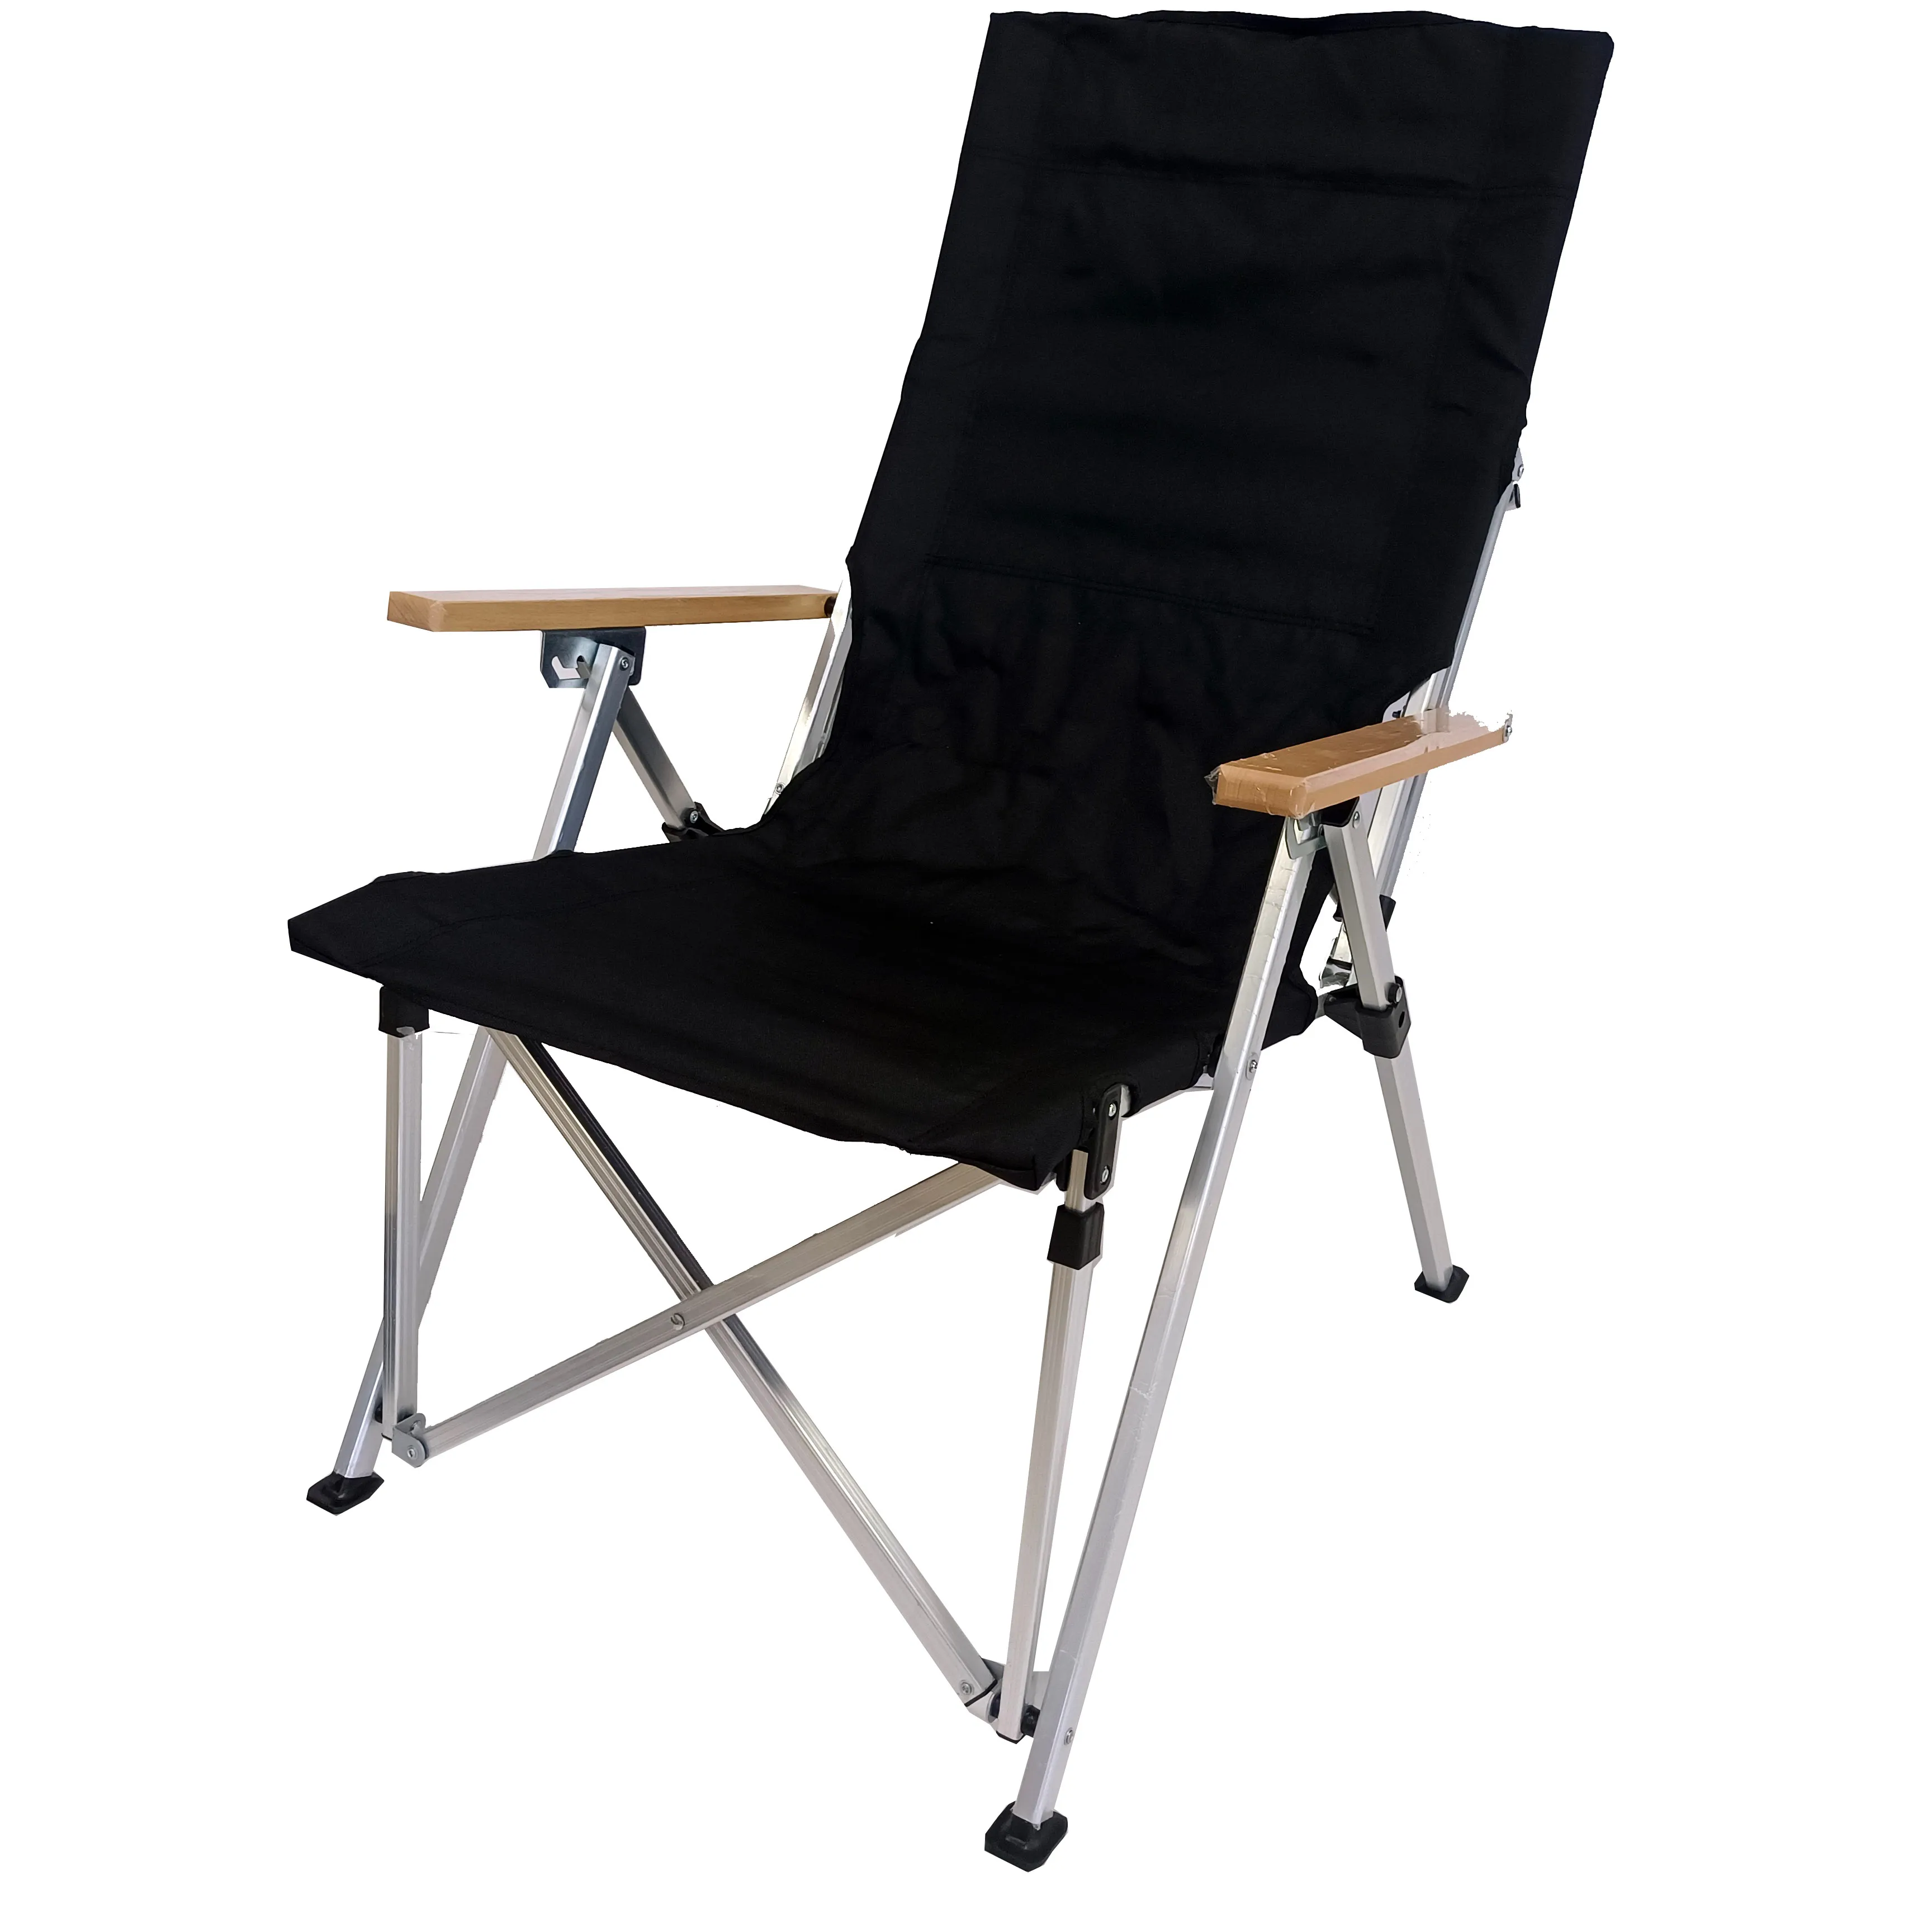 Chaise de Camping pliable et légère, vente en gros, chaise pliante pour plage, pique-nique, poisson, haute qualité